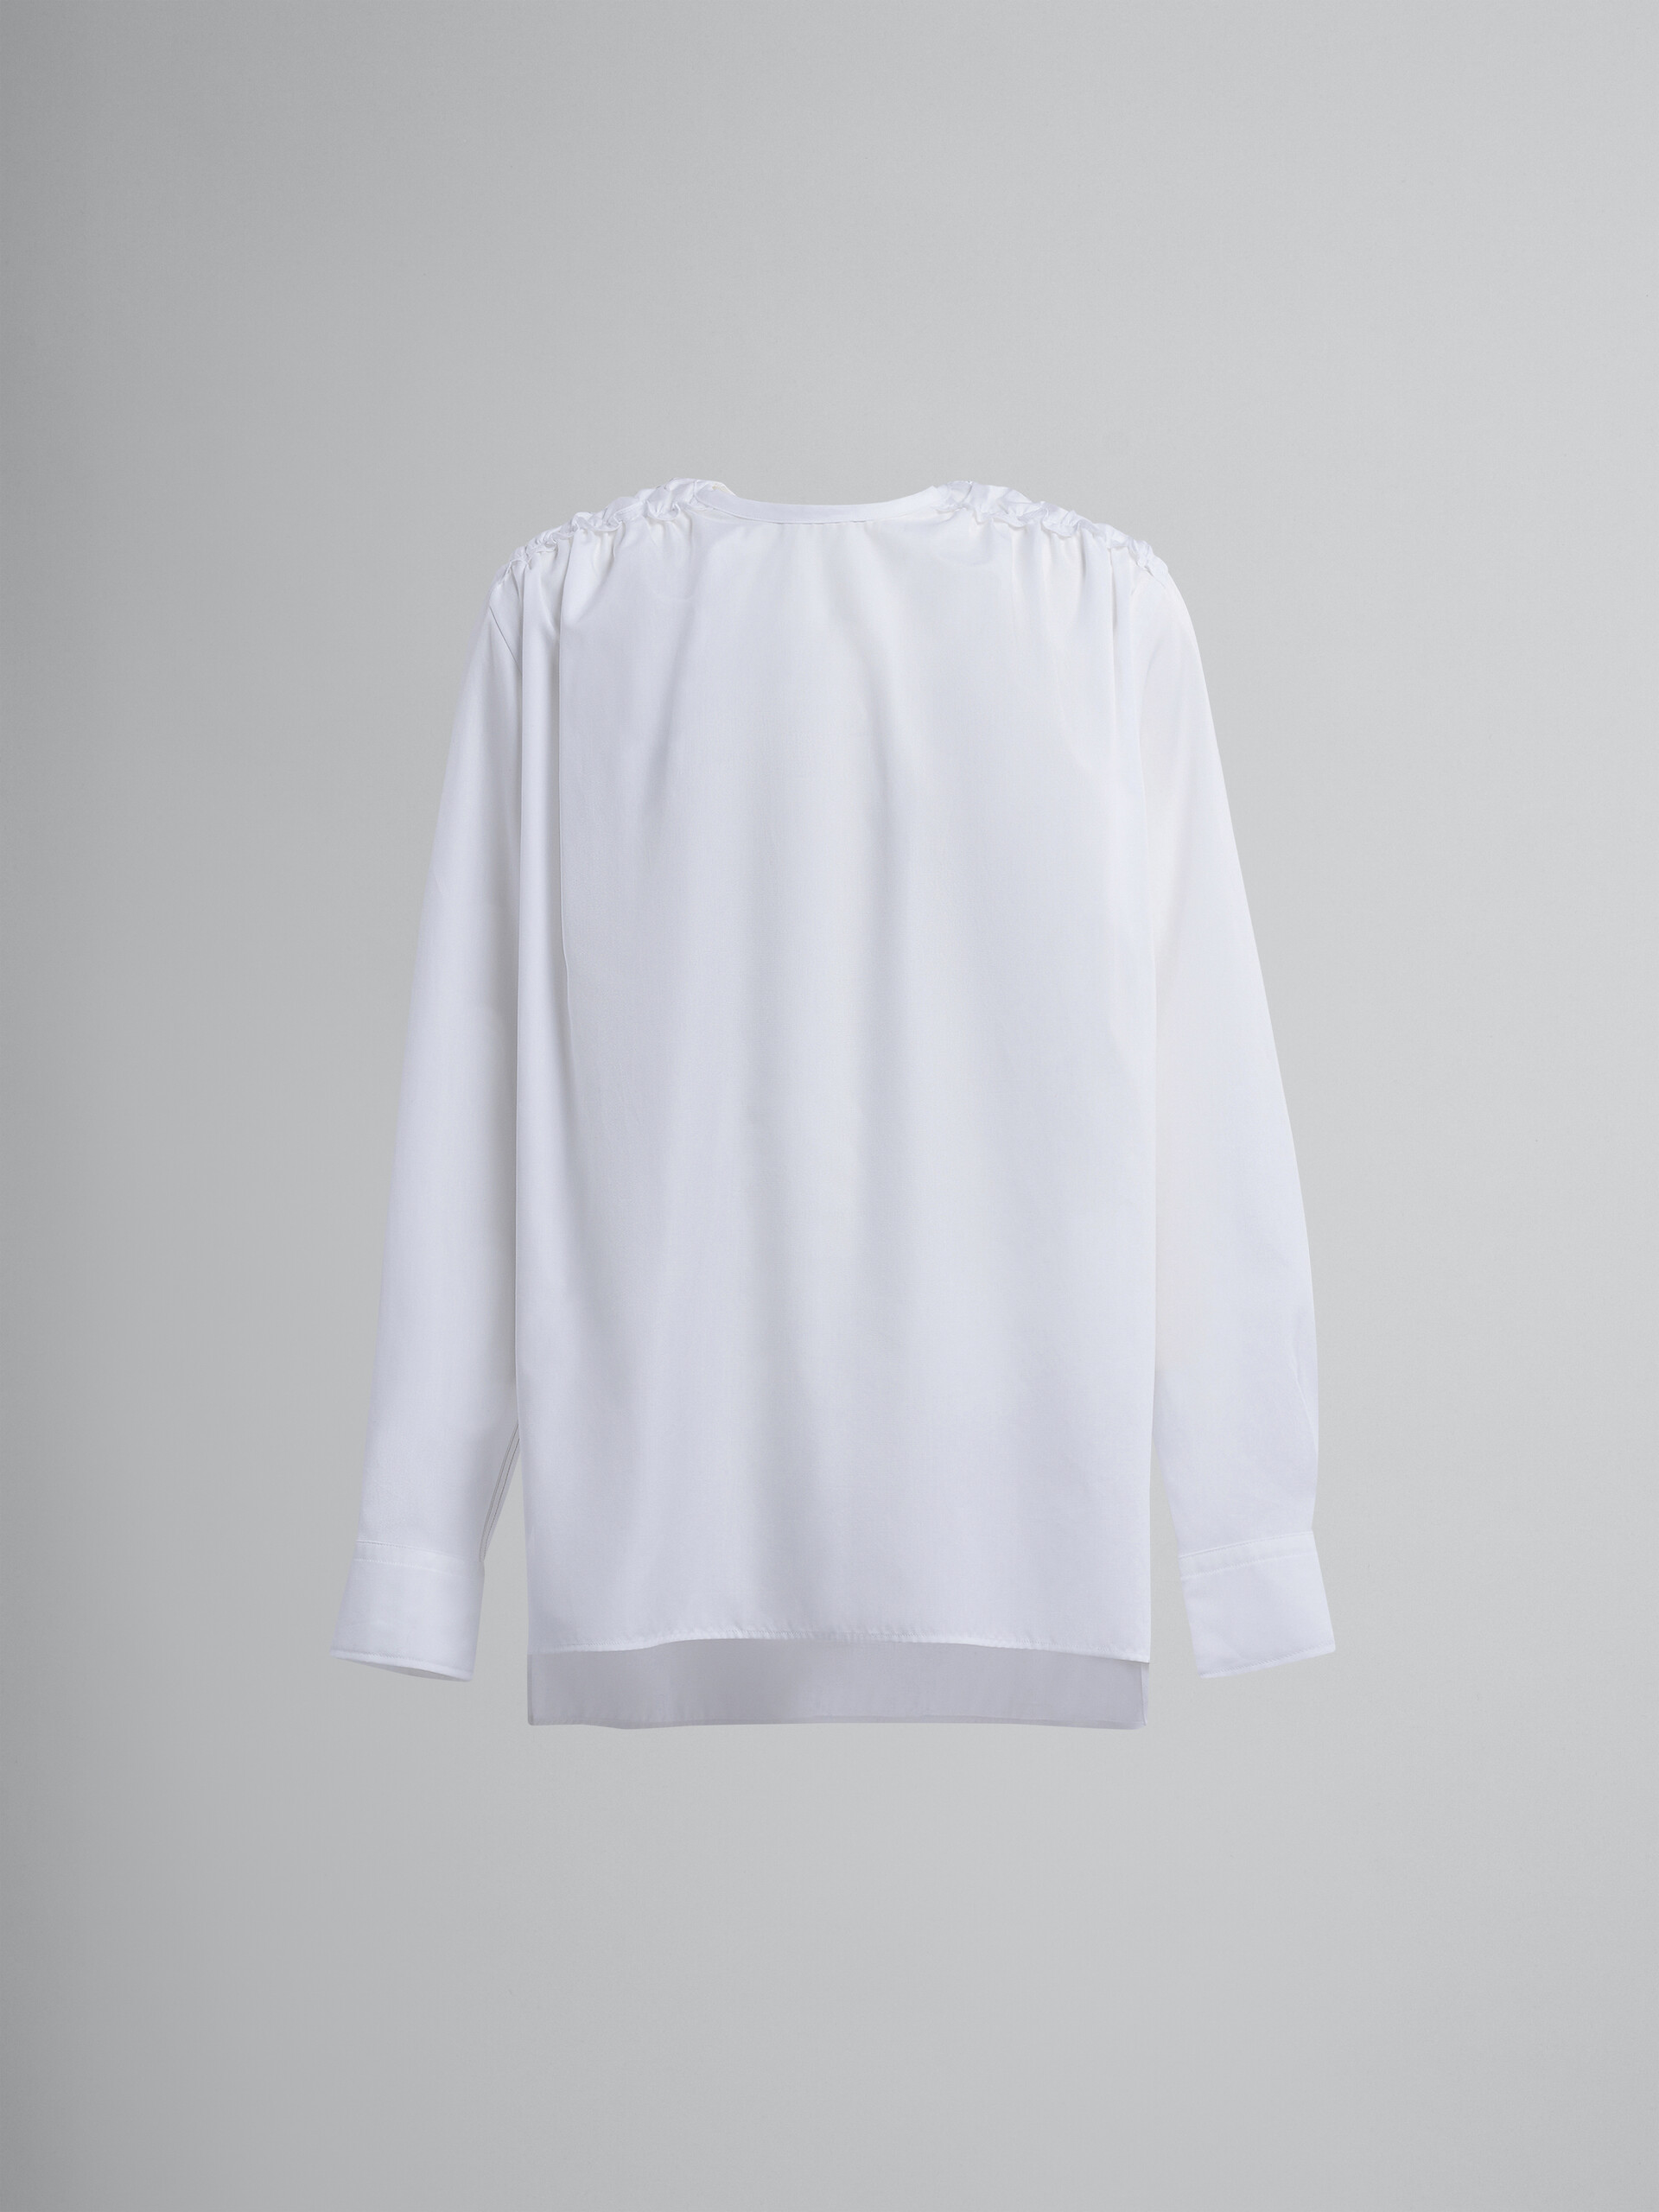 White cotton poplin shirt - Shirts - Image 1